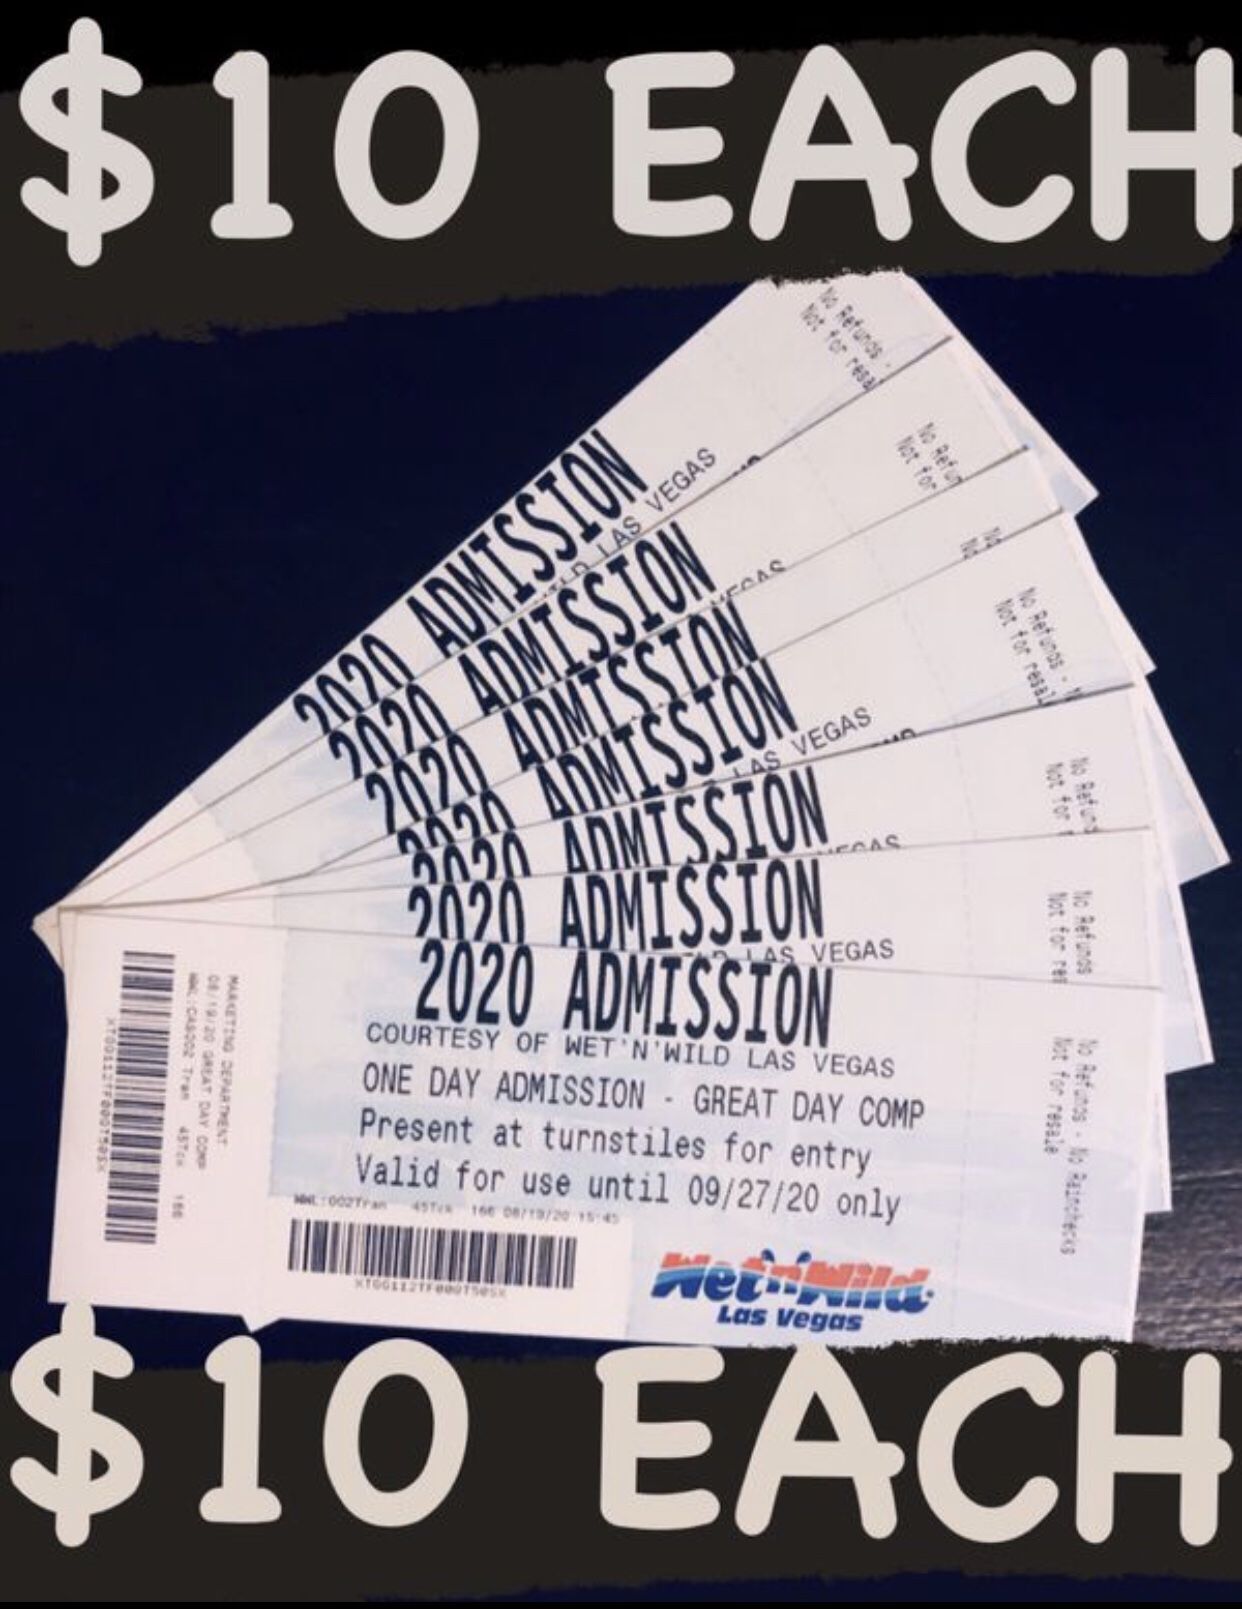 Wet n wild tickets $10 each